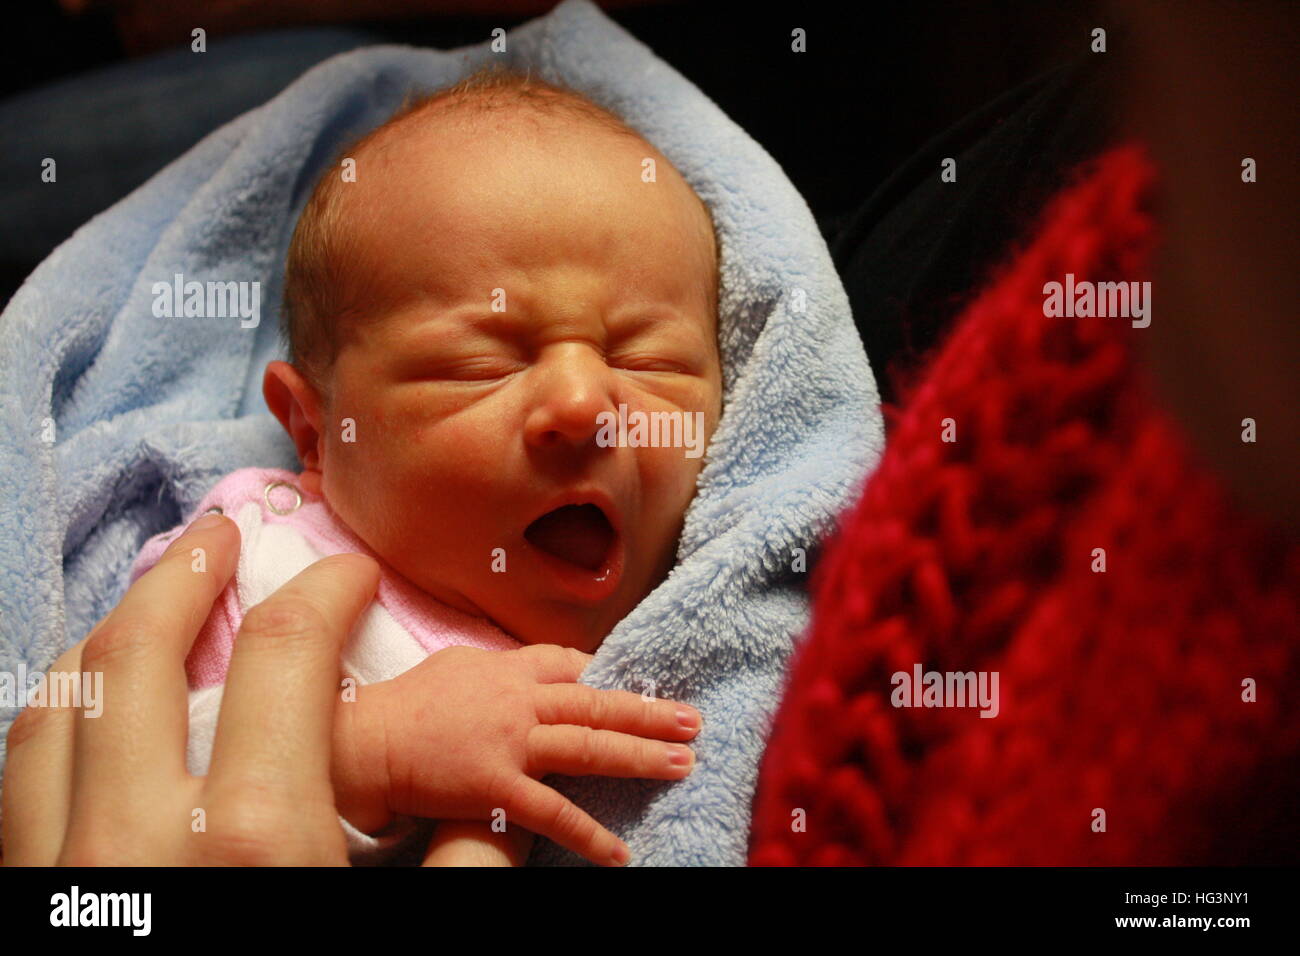 Mi hijo, recién nacido, hijo, vida, vida nueva, el amor, la familia, el Niño, el niño nacido, Angel, poco, lindo, Blueeyes, rubio, niño, joven, dulce, Foto de stock